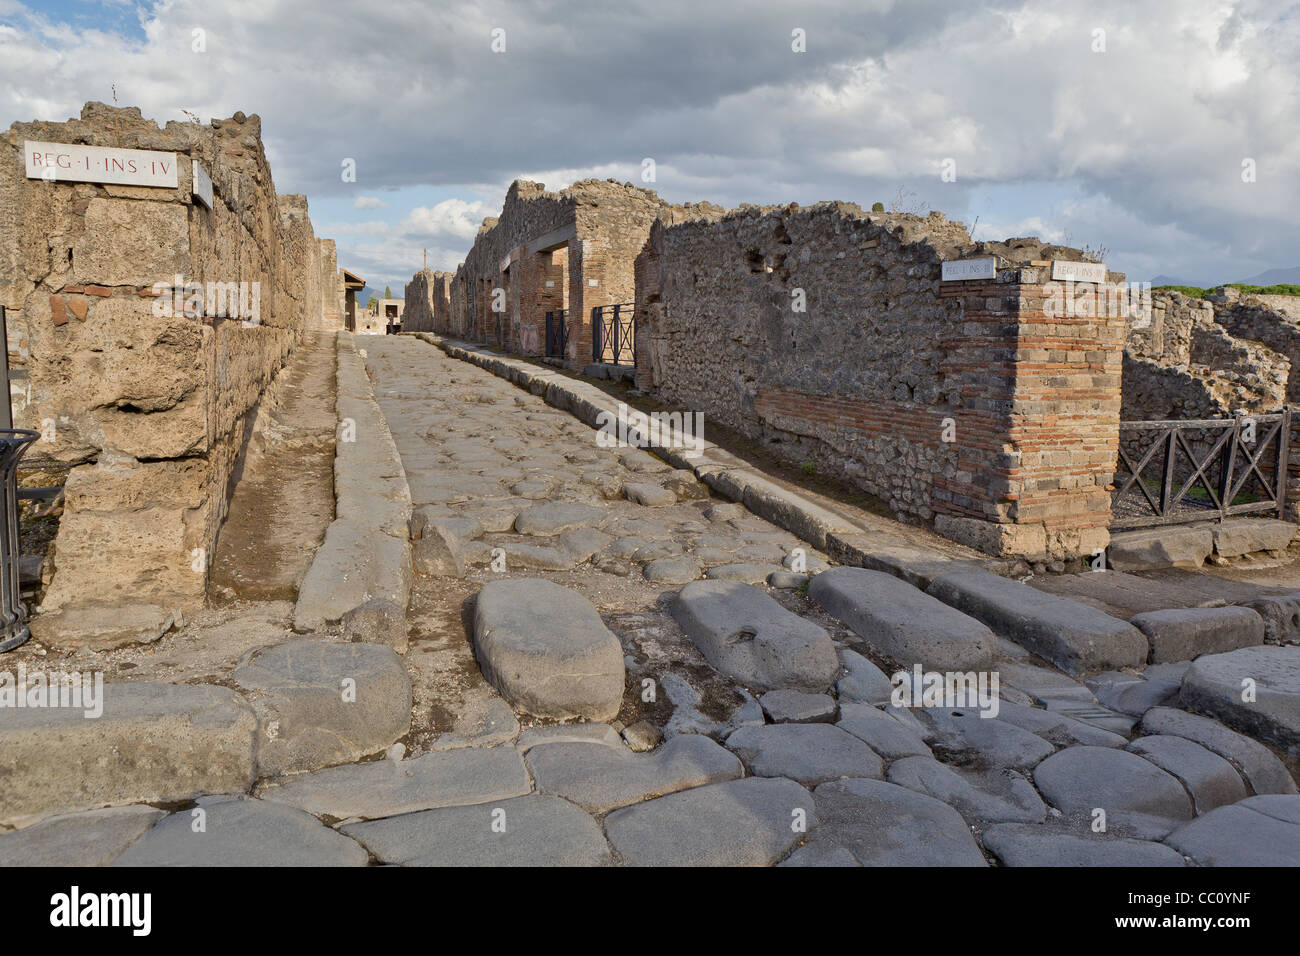 Rue ancienne ((Reg- I- Ins- IV)) dans le site romain de Pompéi, Campanie, ItalyUnesco Site du patrimoine mondial Banque D'Images